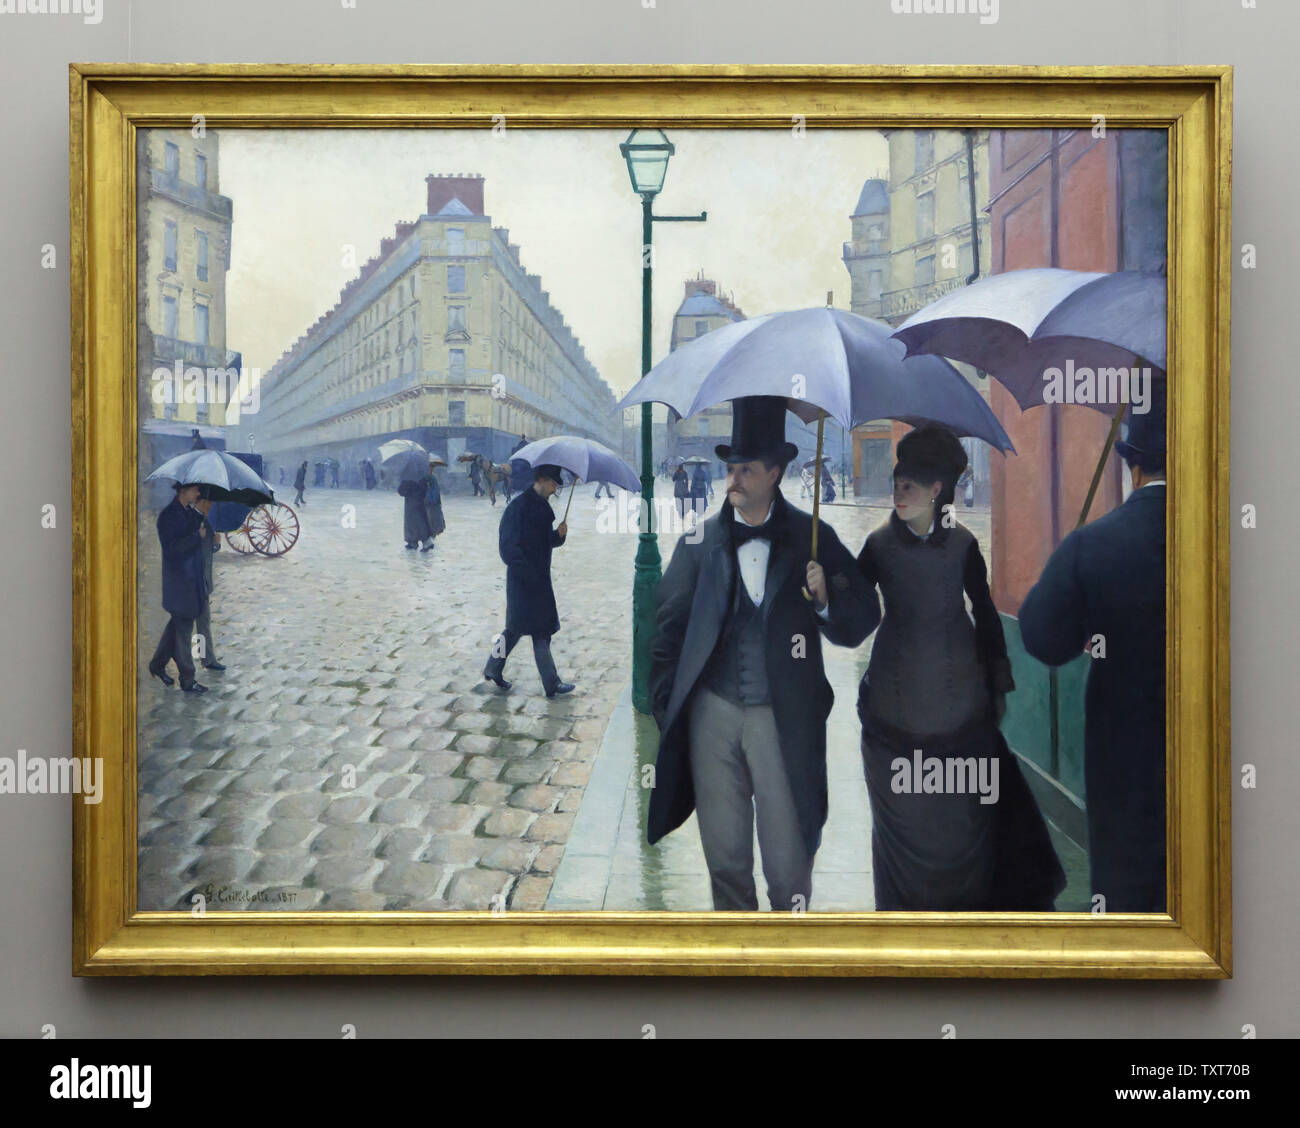 La pintura "Paris Street. Rainy Day' por el pintor impresionista francés Gustave Caillebotte (1877) muestra en su exposición en la Alte Nationalgalerie (Antigua Galería Nacional) en Berlín, Alemania. Foto de stock